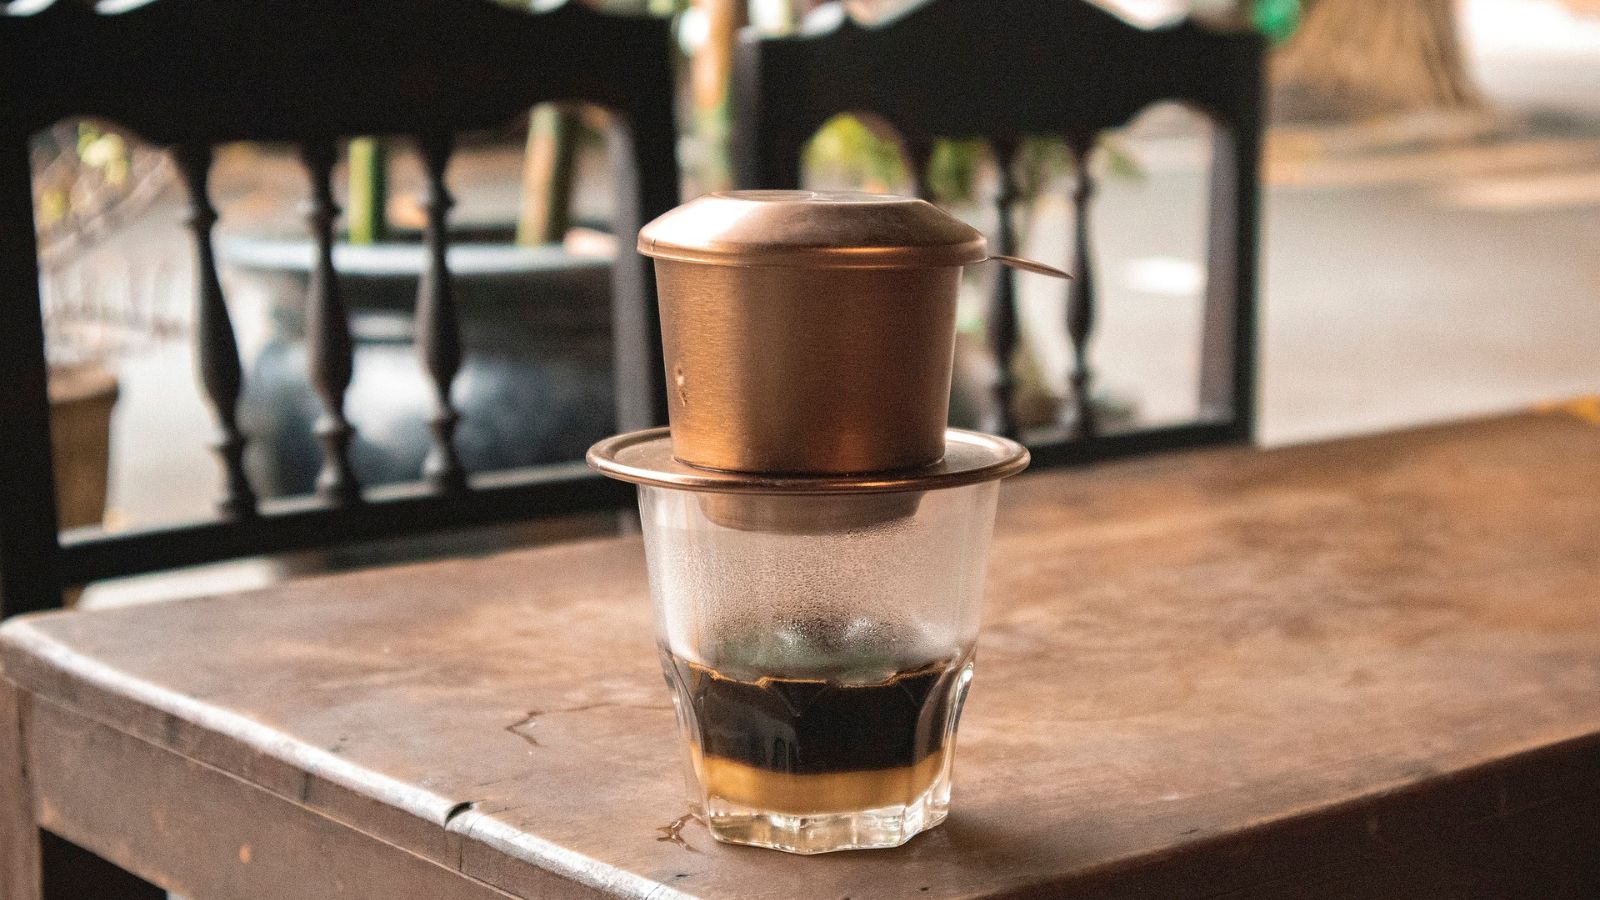 văn hoá cafe và trà việt nam, hình ảnh ly cà phê phin - nét độc đáo văn hoá việt